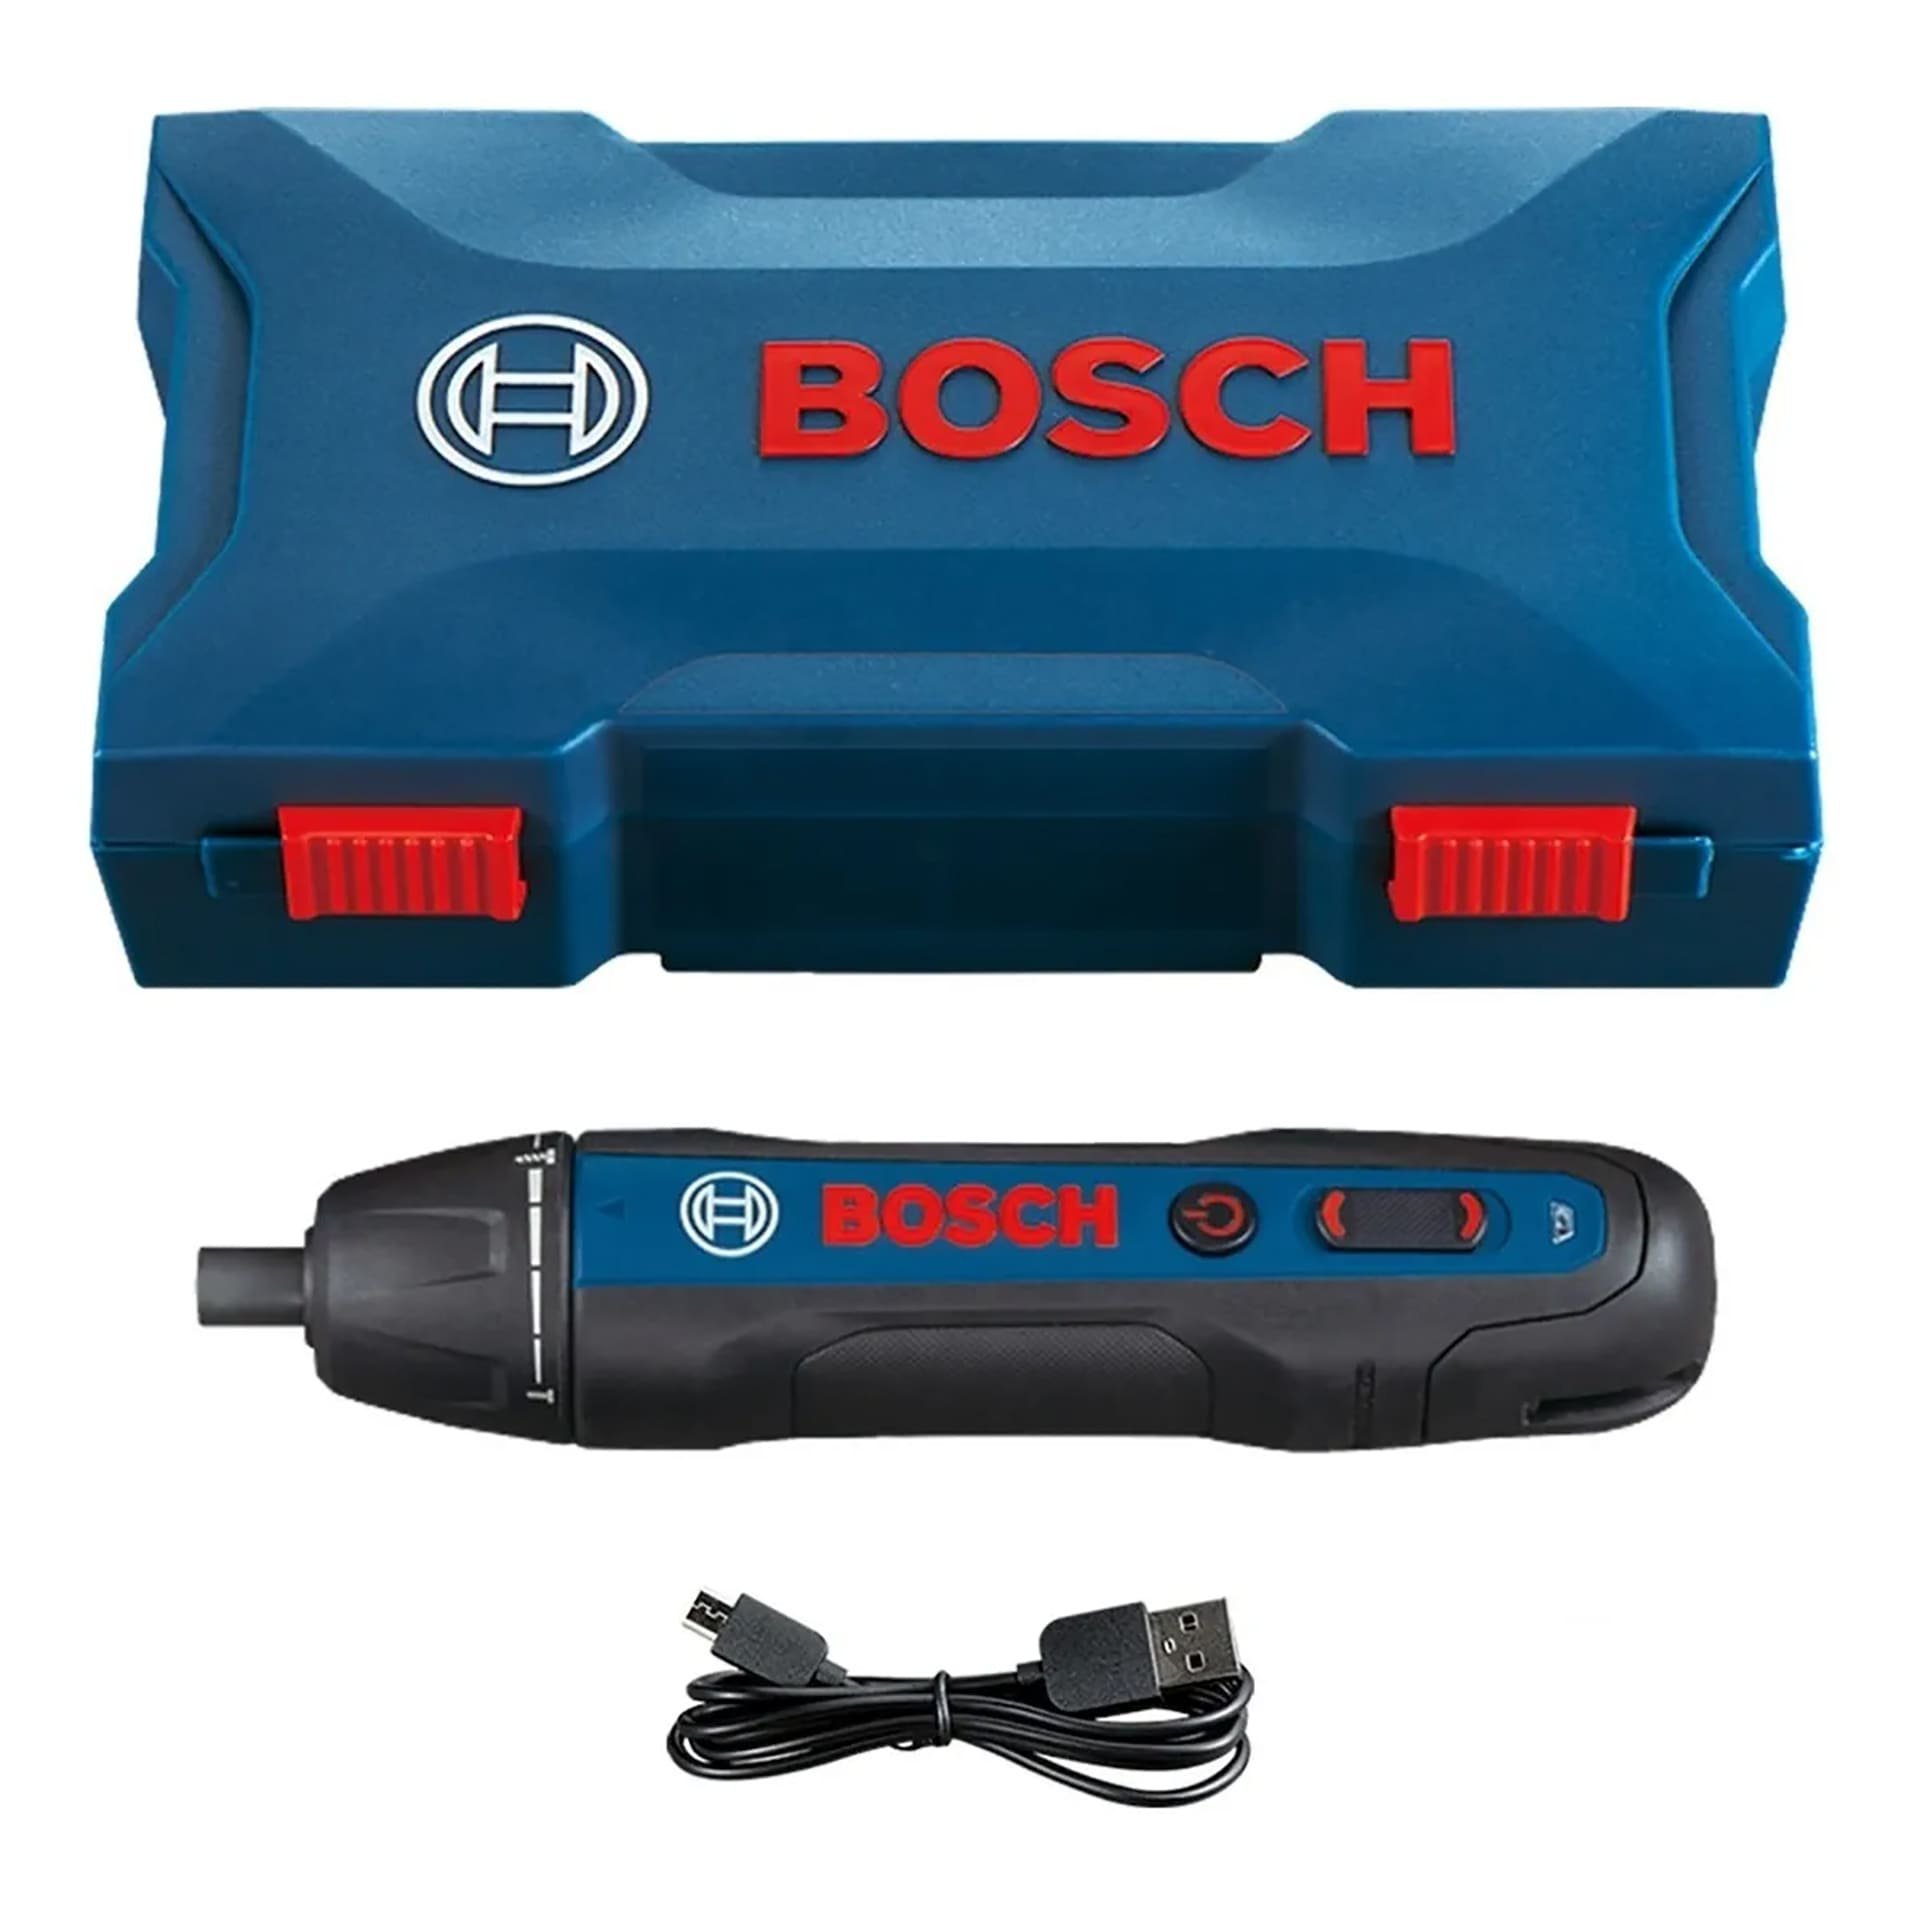 Parafusadeira sem fio Bosch Professional GO 3.6V azul